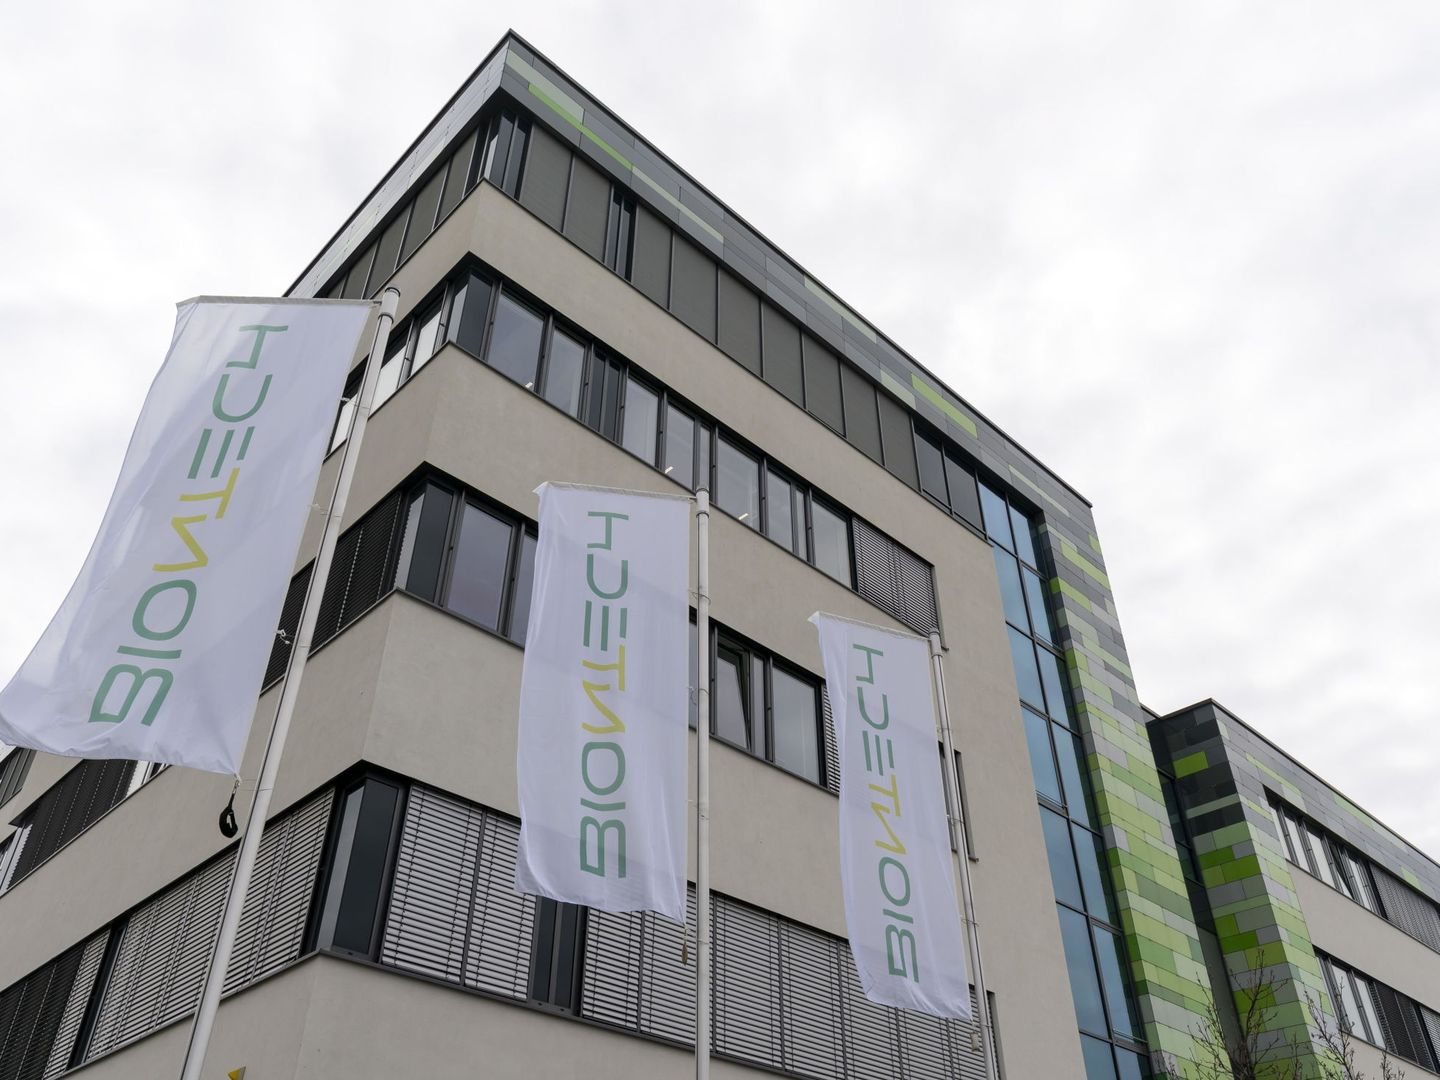 Oficinas de BioNTech en Mainz, Alemania. (Reuters)